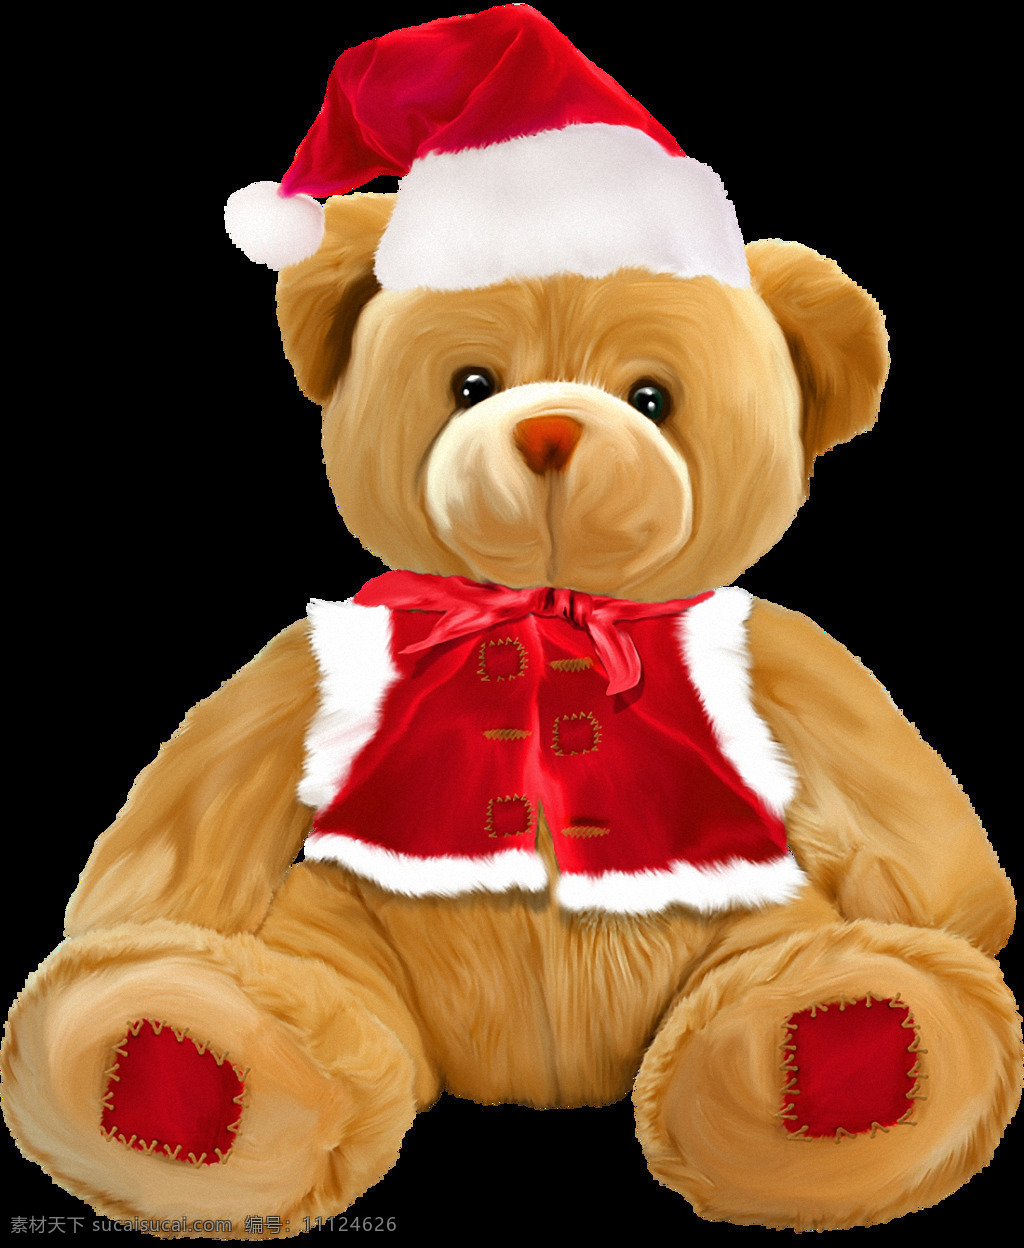 戴 圣诞 帽 泰迪 熊 免 抠 透明 泰迪熊 熊玩具 布娃娃熊 各种 大全 棕熊图片 笨熊 大熊图片 北极熊 灰熊图片 卡通熊图片 手绘熊图片 小熊宝宝